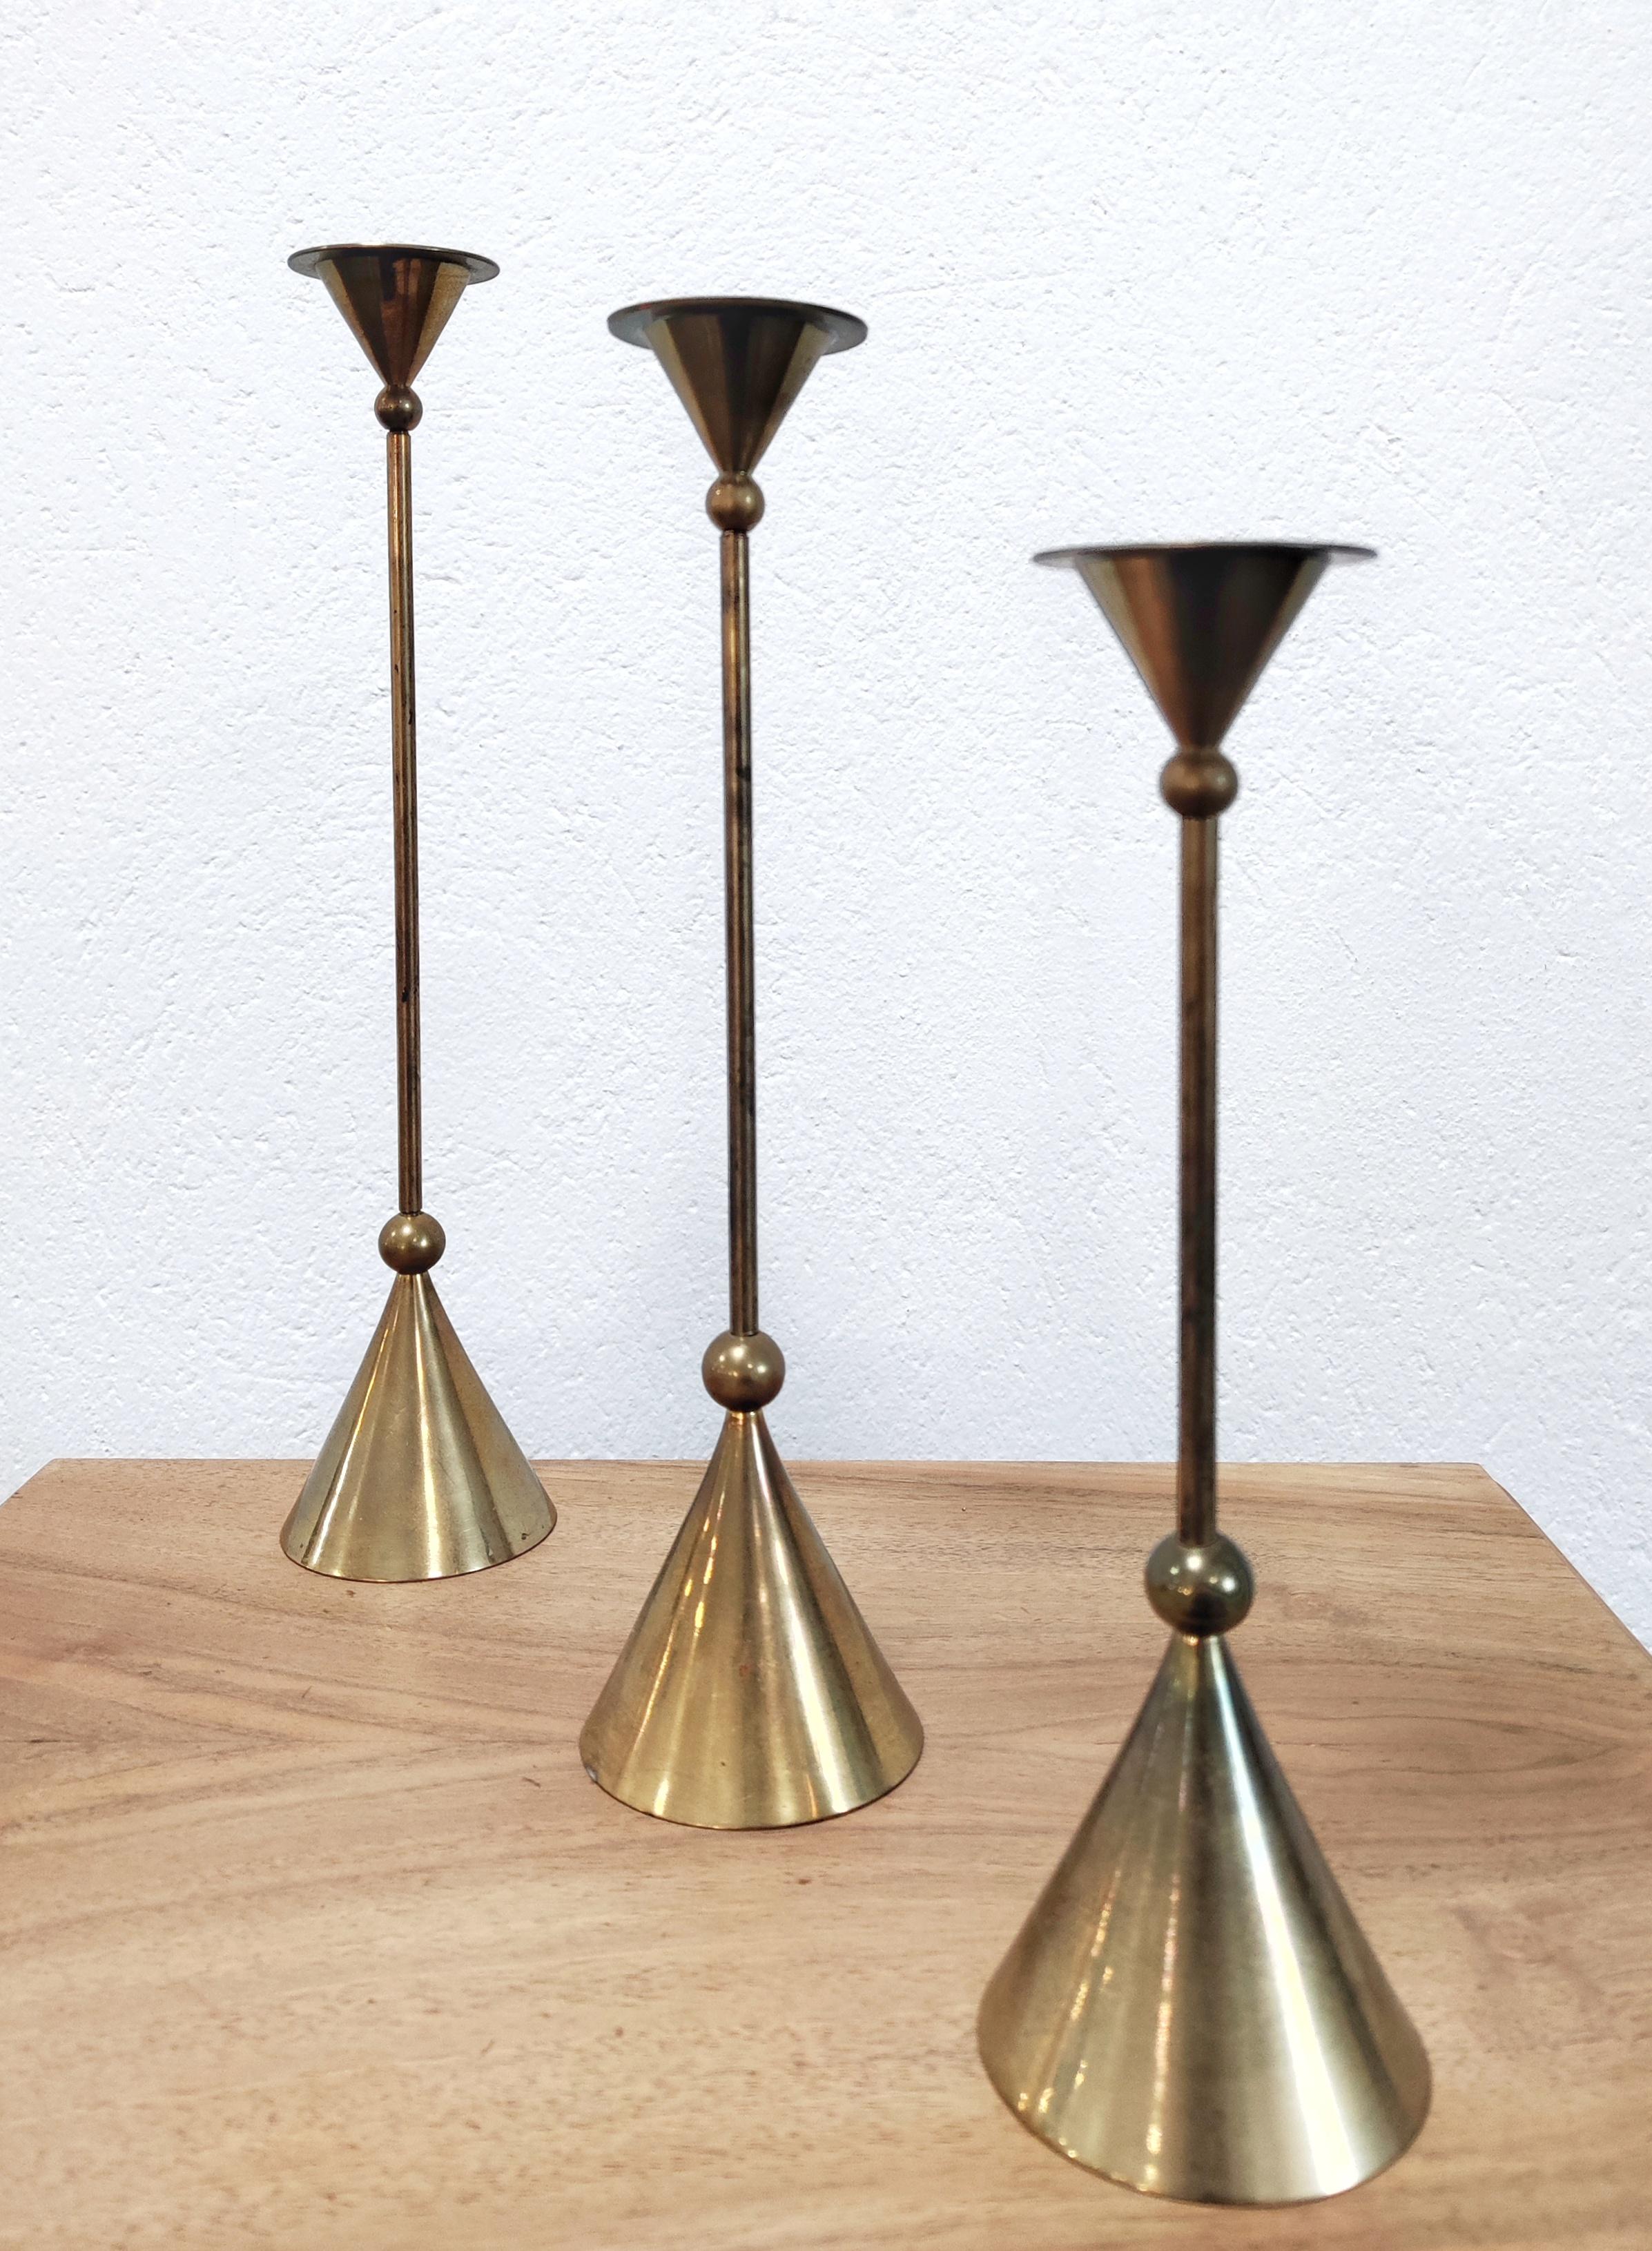 In diesem Angebot finden Sie einen Satz von drei Kerzenhaltern aus Bronze. Die Kerzenständer wurden in den 1980er Jahren von Christian de Beaumont in Frankreich entworfen. Sie sind in drei verschiedenen Größen erhältlich, so dass man mit ihnen